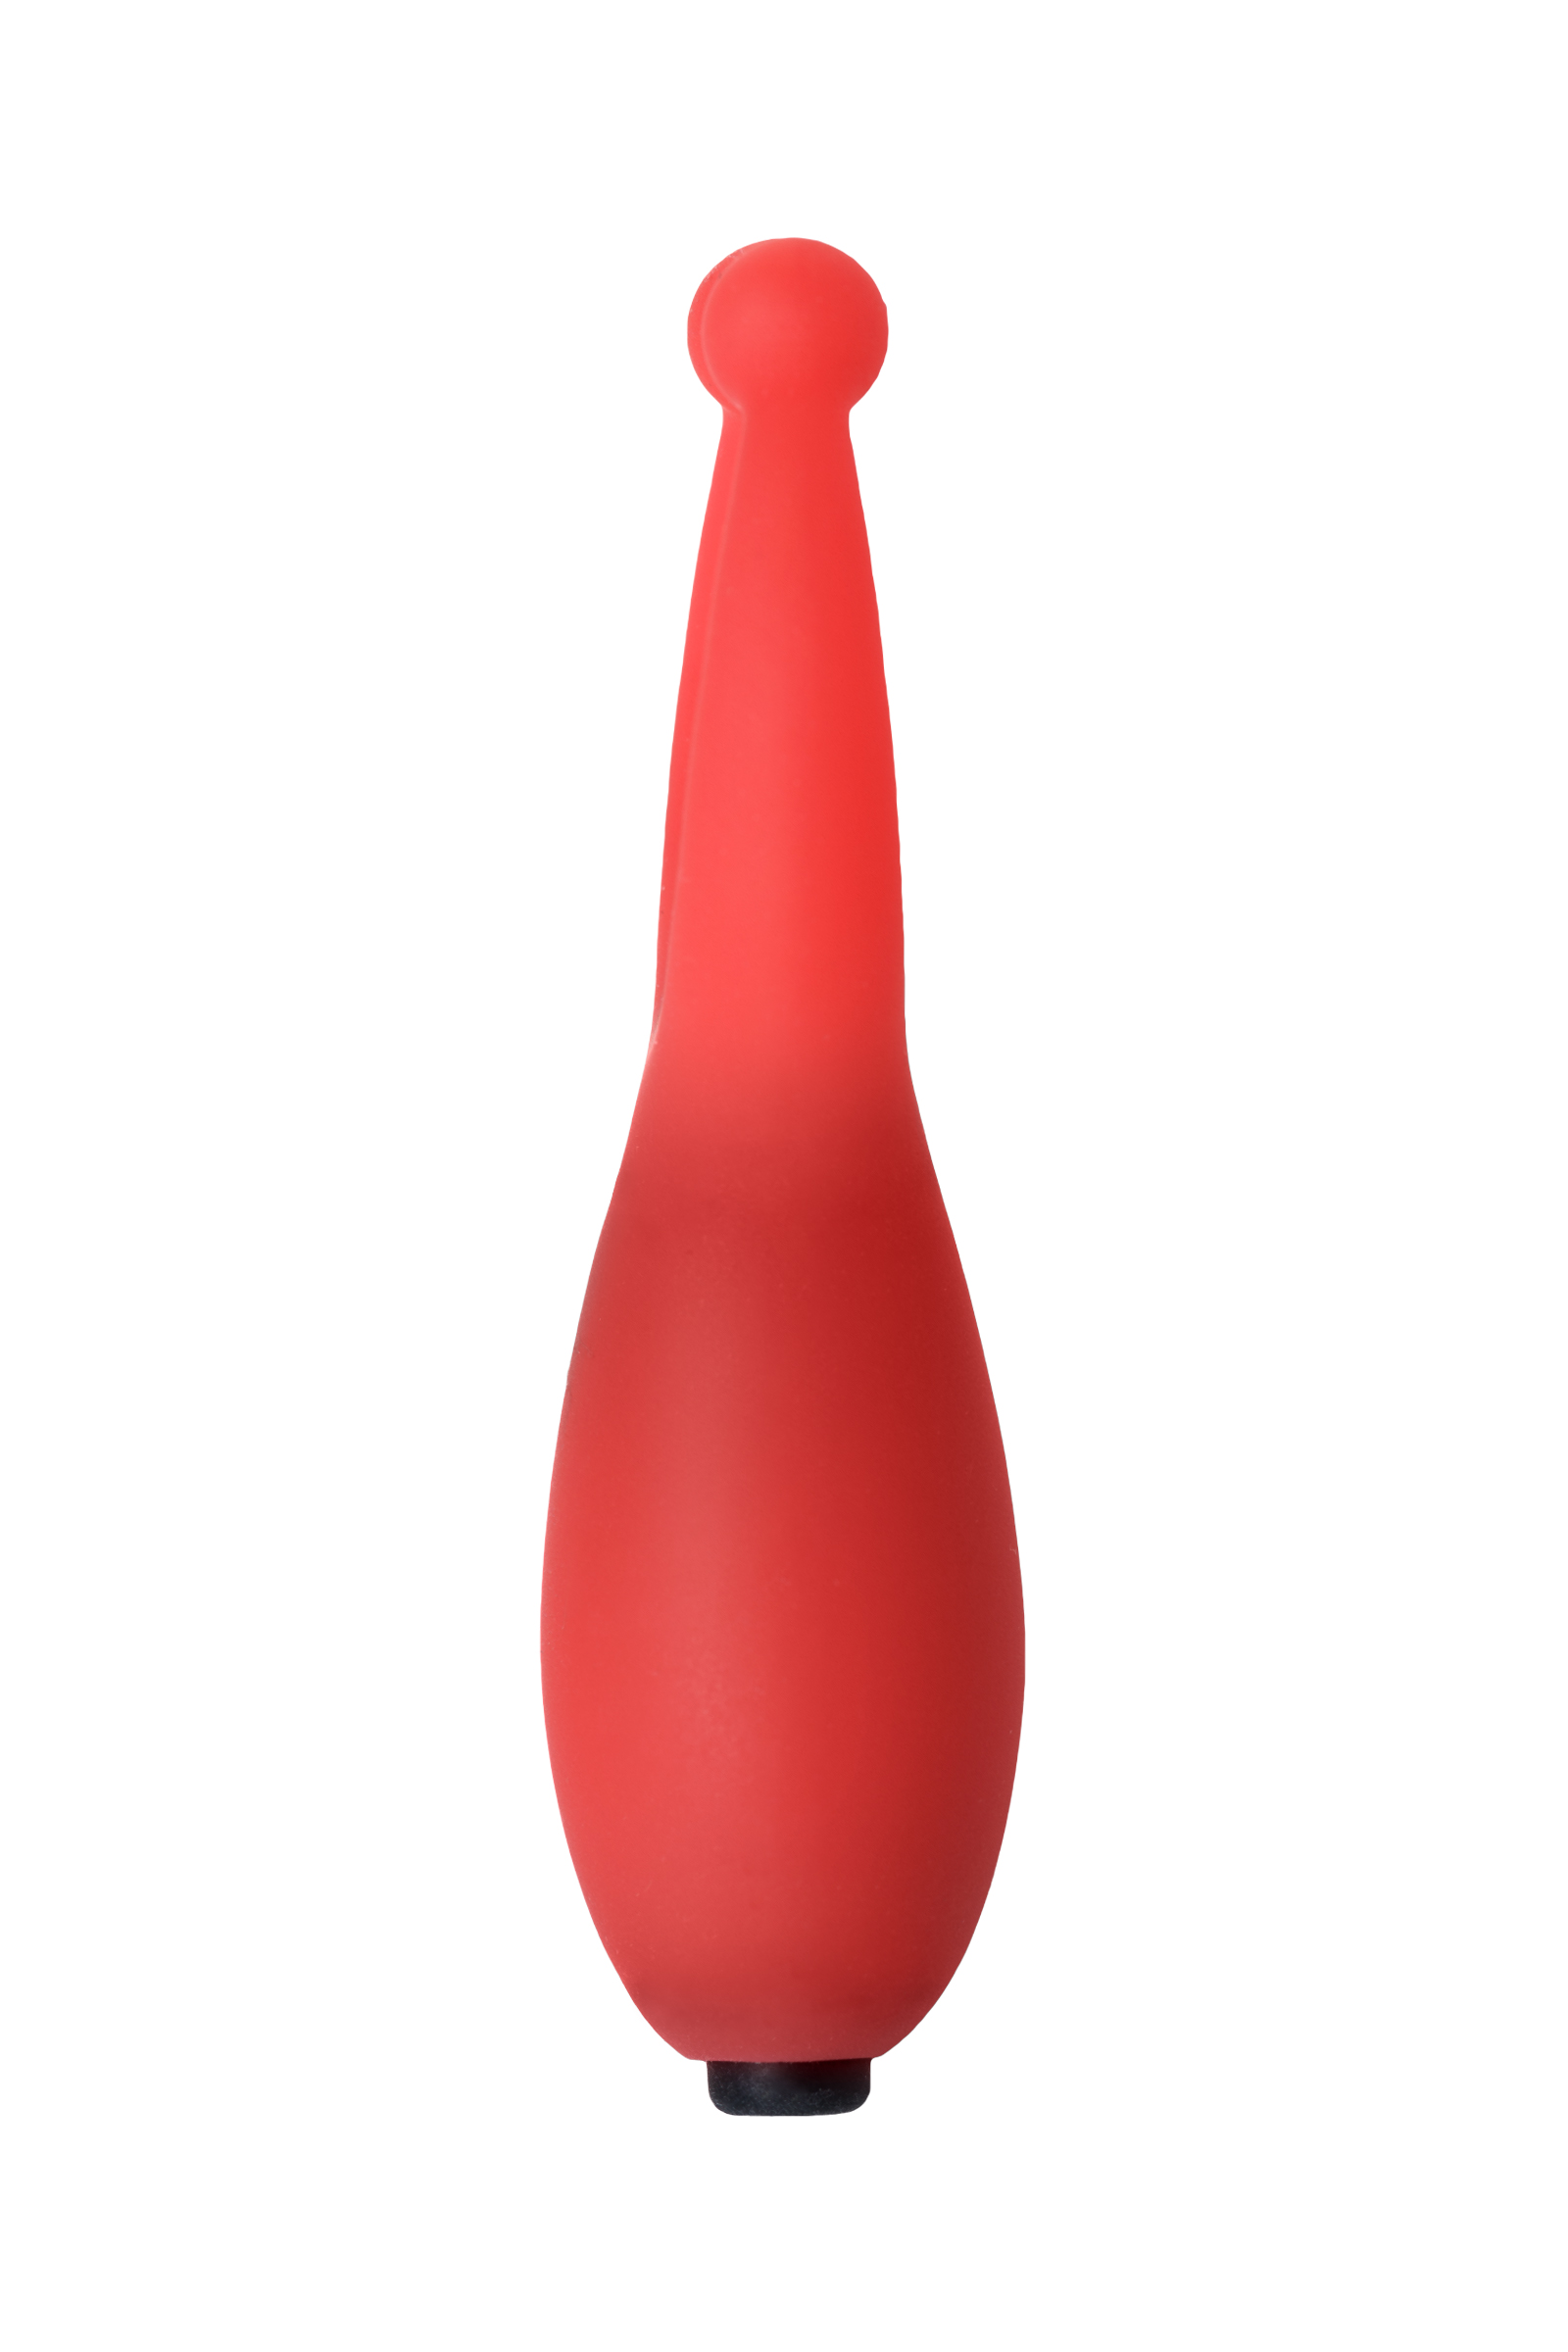 Мини-вибратор Штучки-дрючки Штучка, силикон, красный, 7,5 см. Фото N6